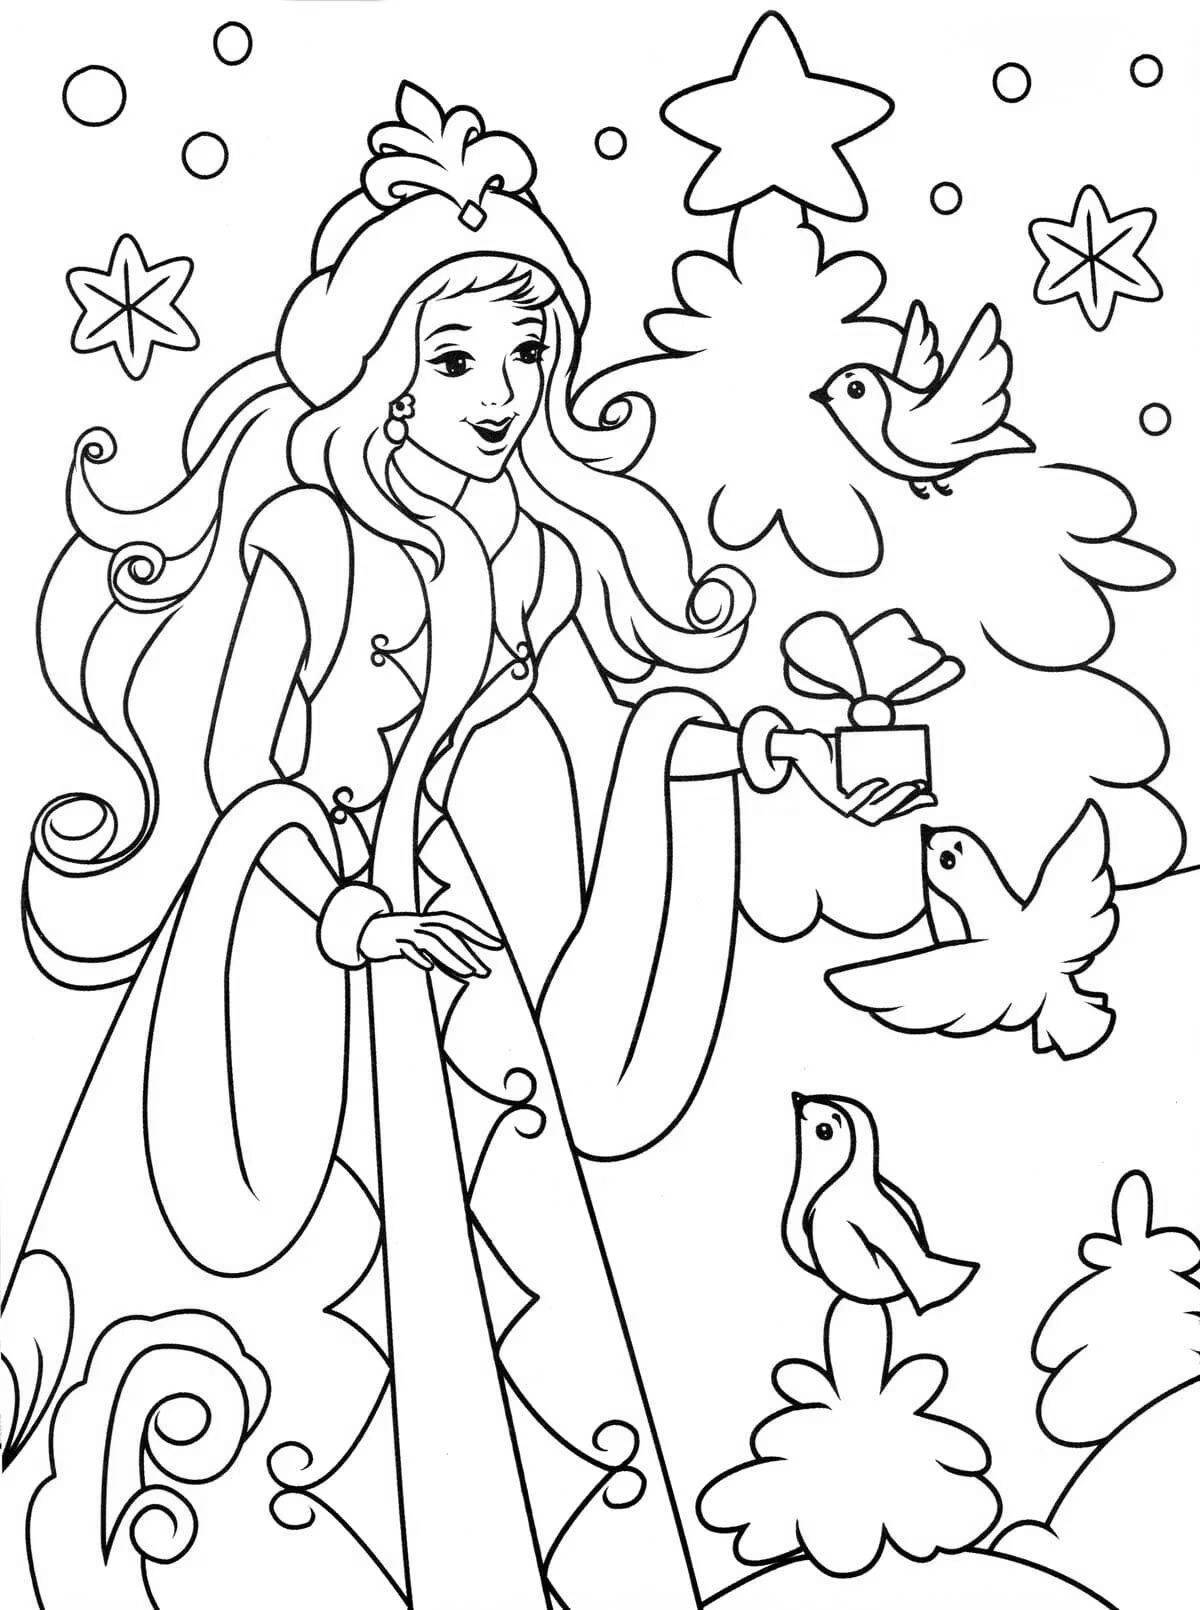 Готовая раскраска девушка зима